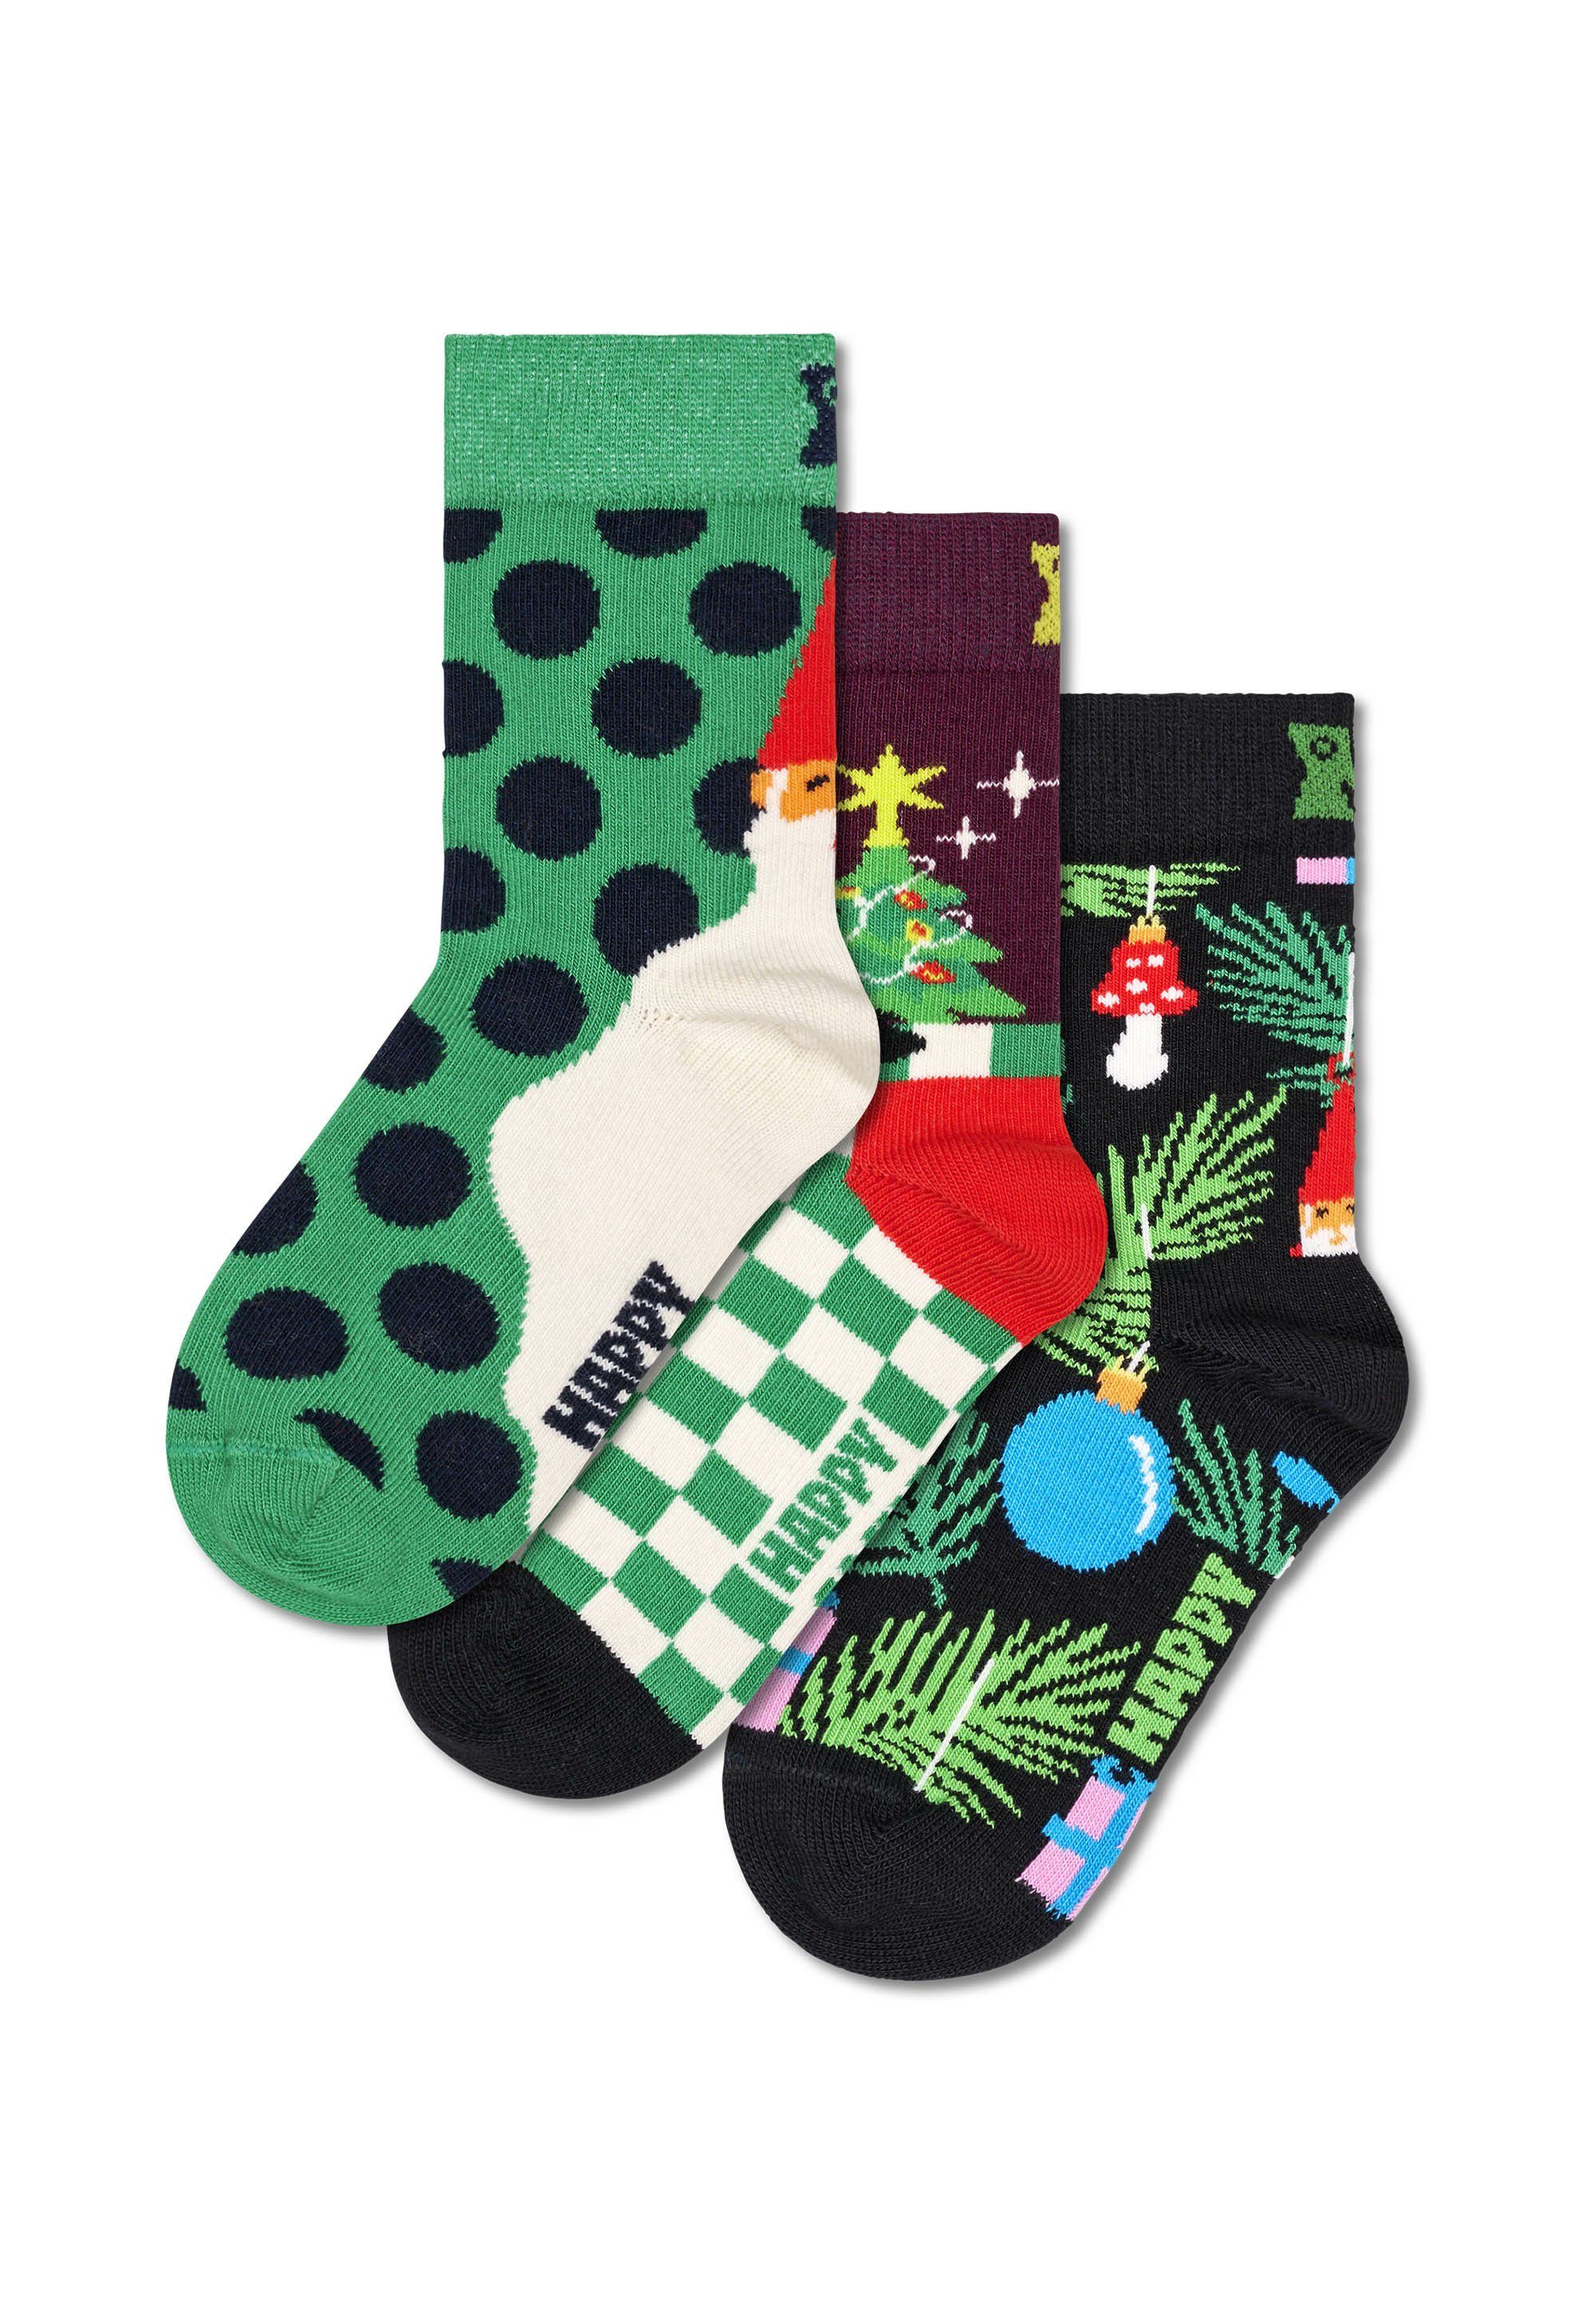 Aus nachhaltiger Set Gift Presents Under Basicsocken Socks Baumwolle Tree Happy The